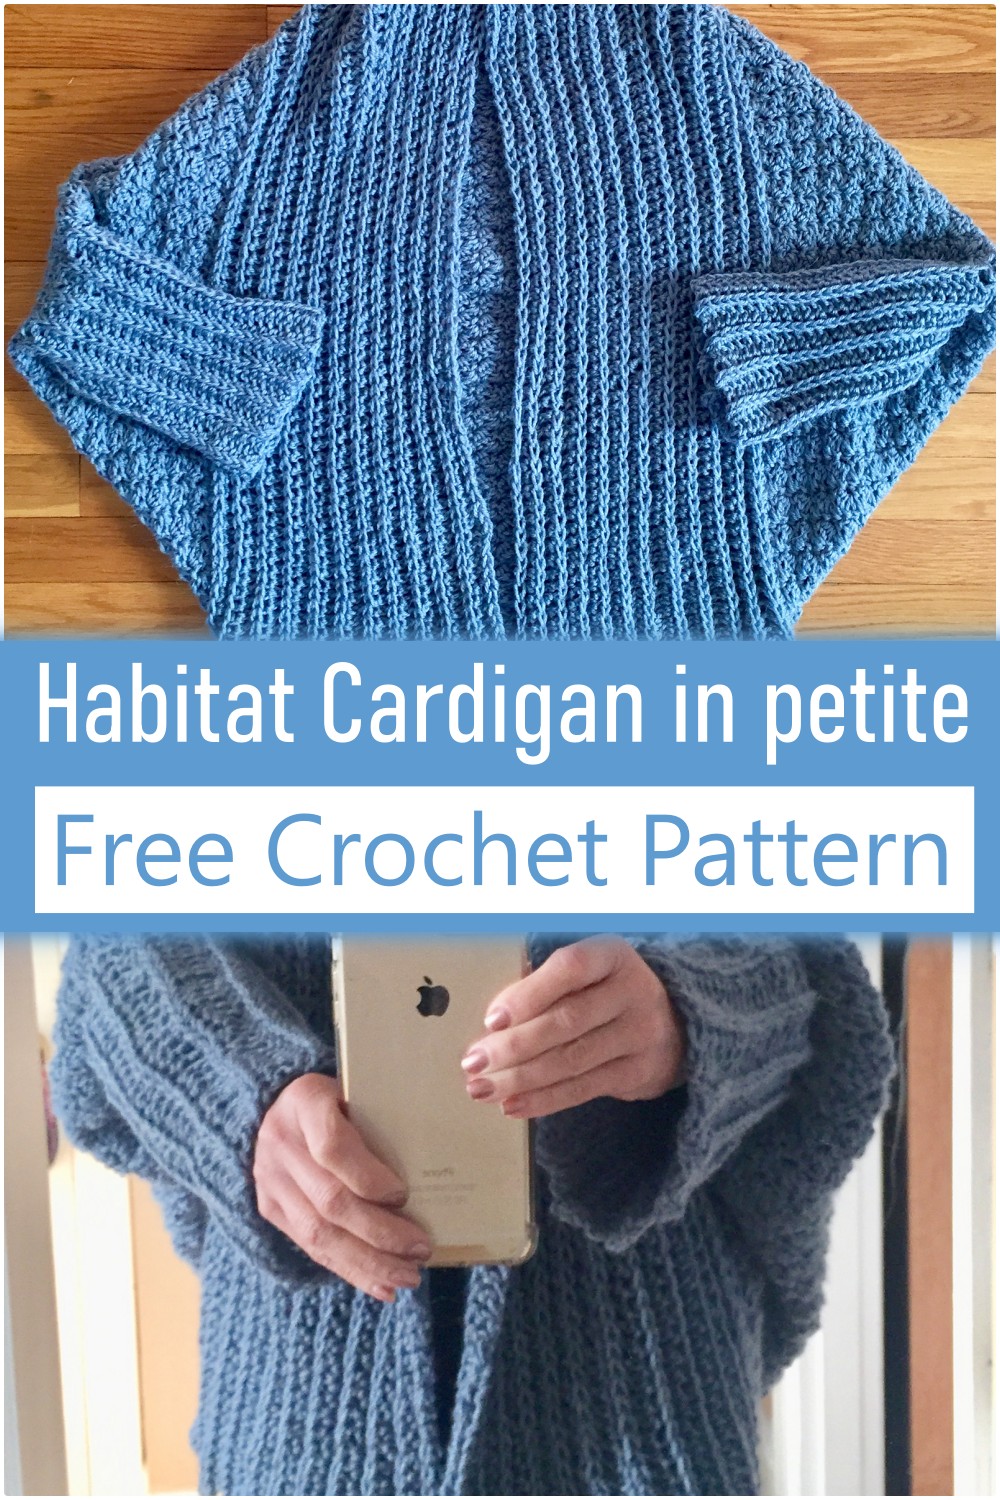 Crochet Habitat Cardigan in petite